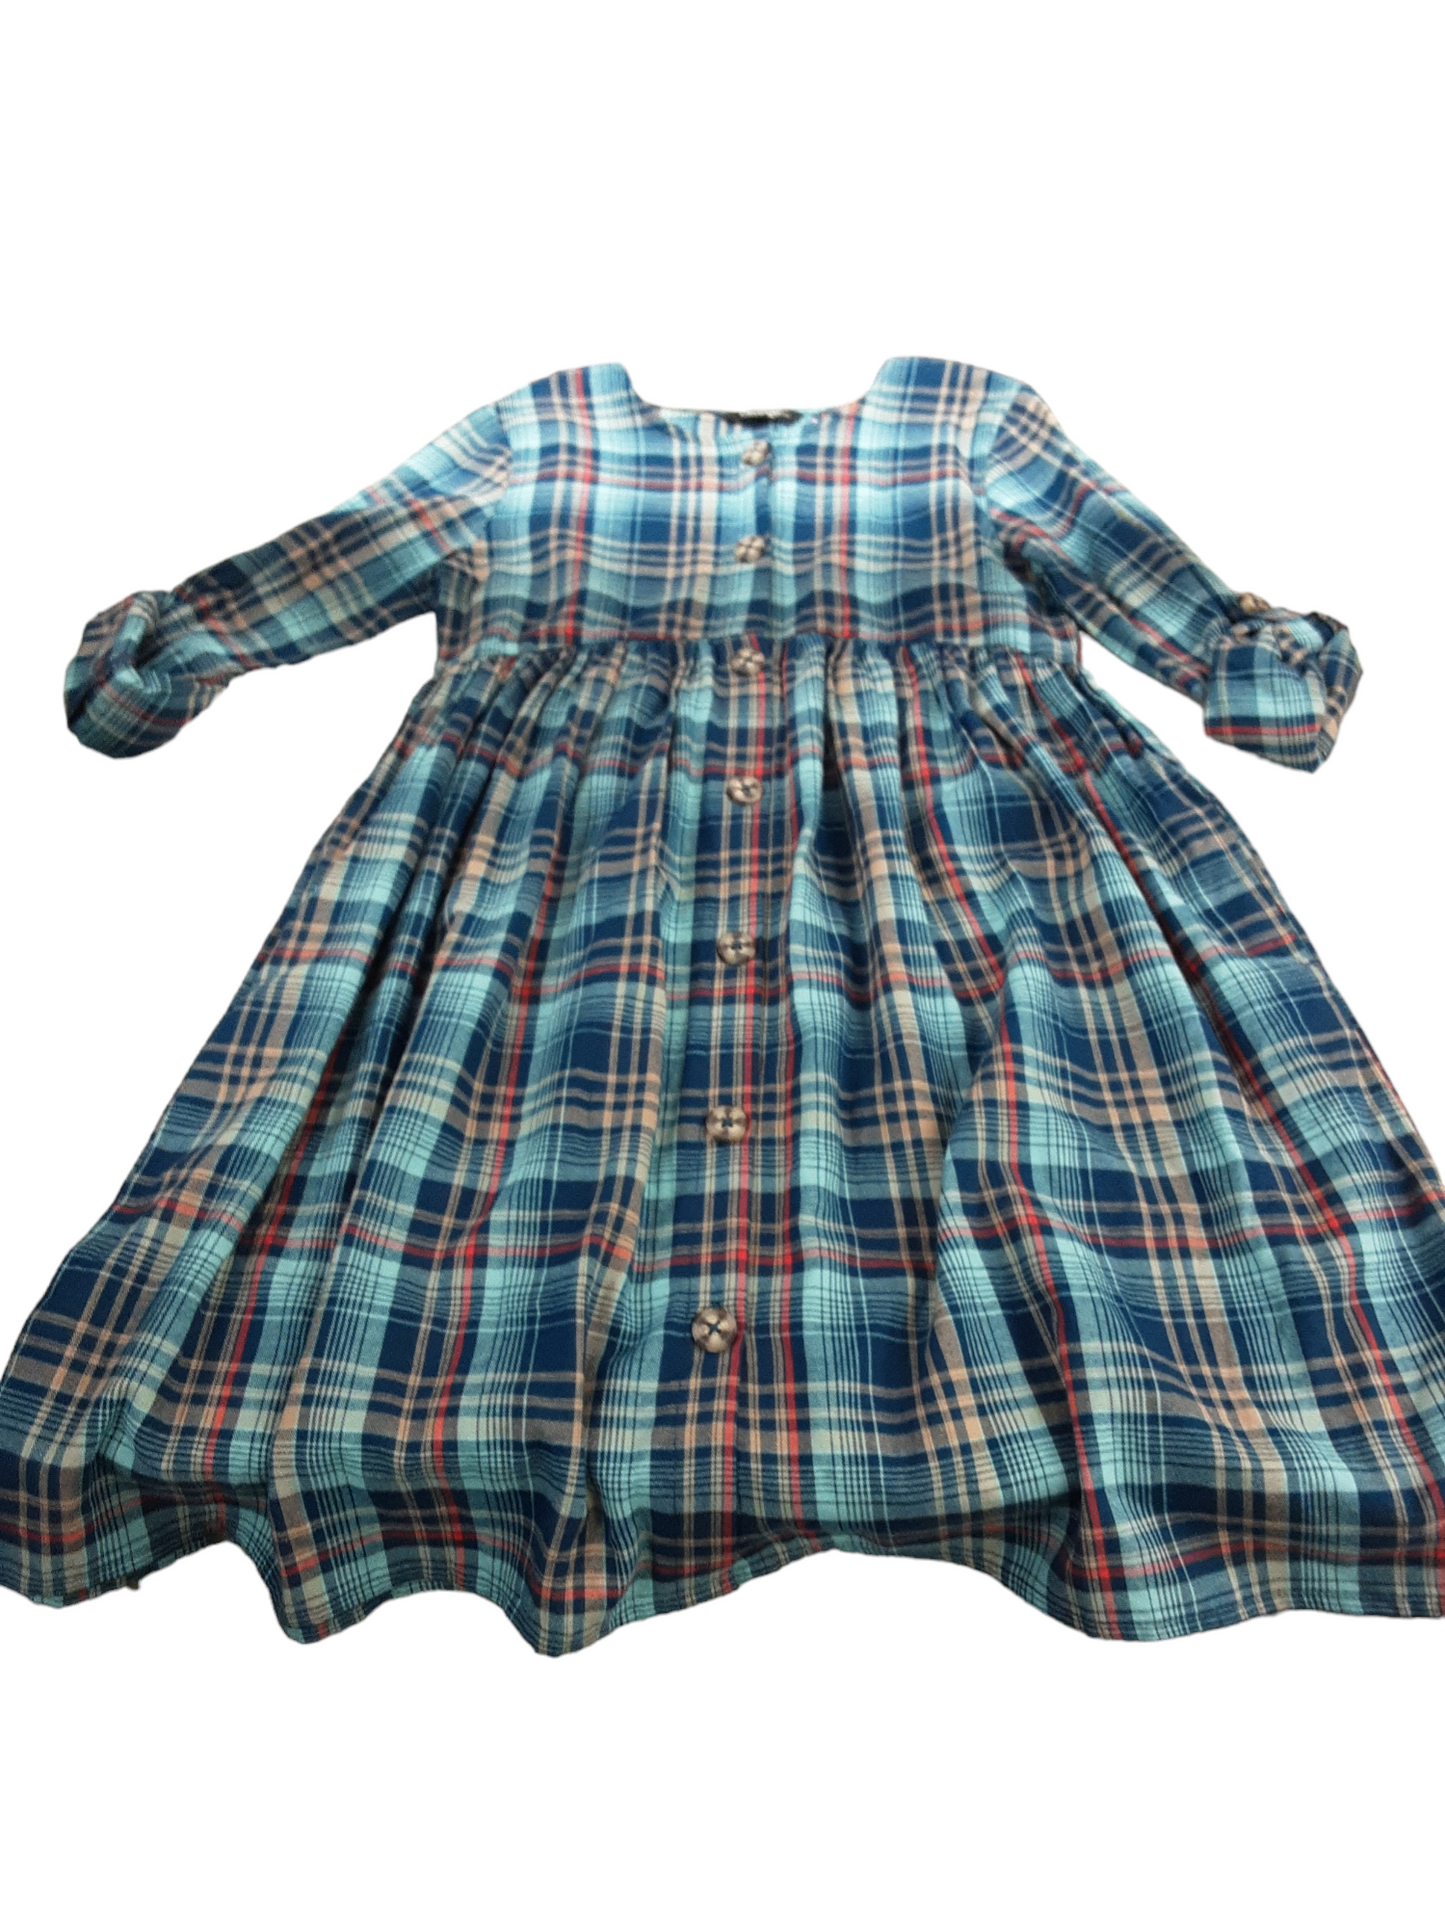 Plaid cotton dress size 12